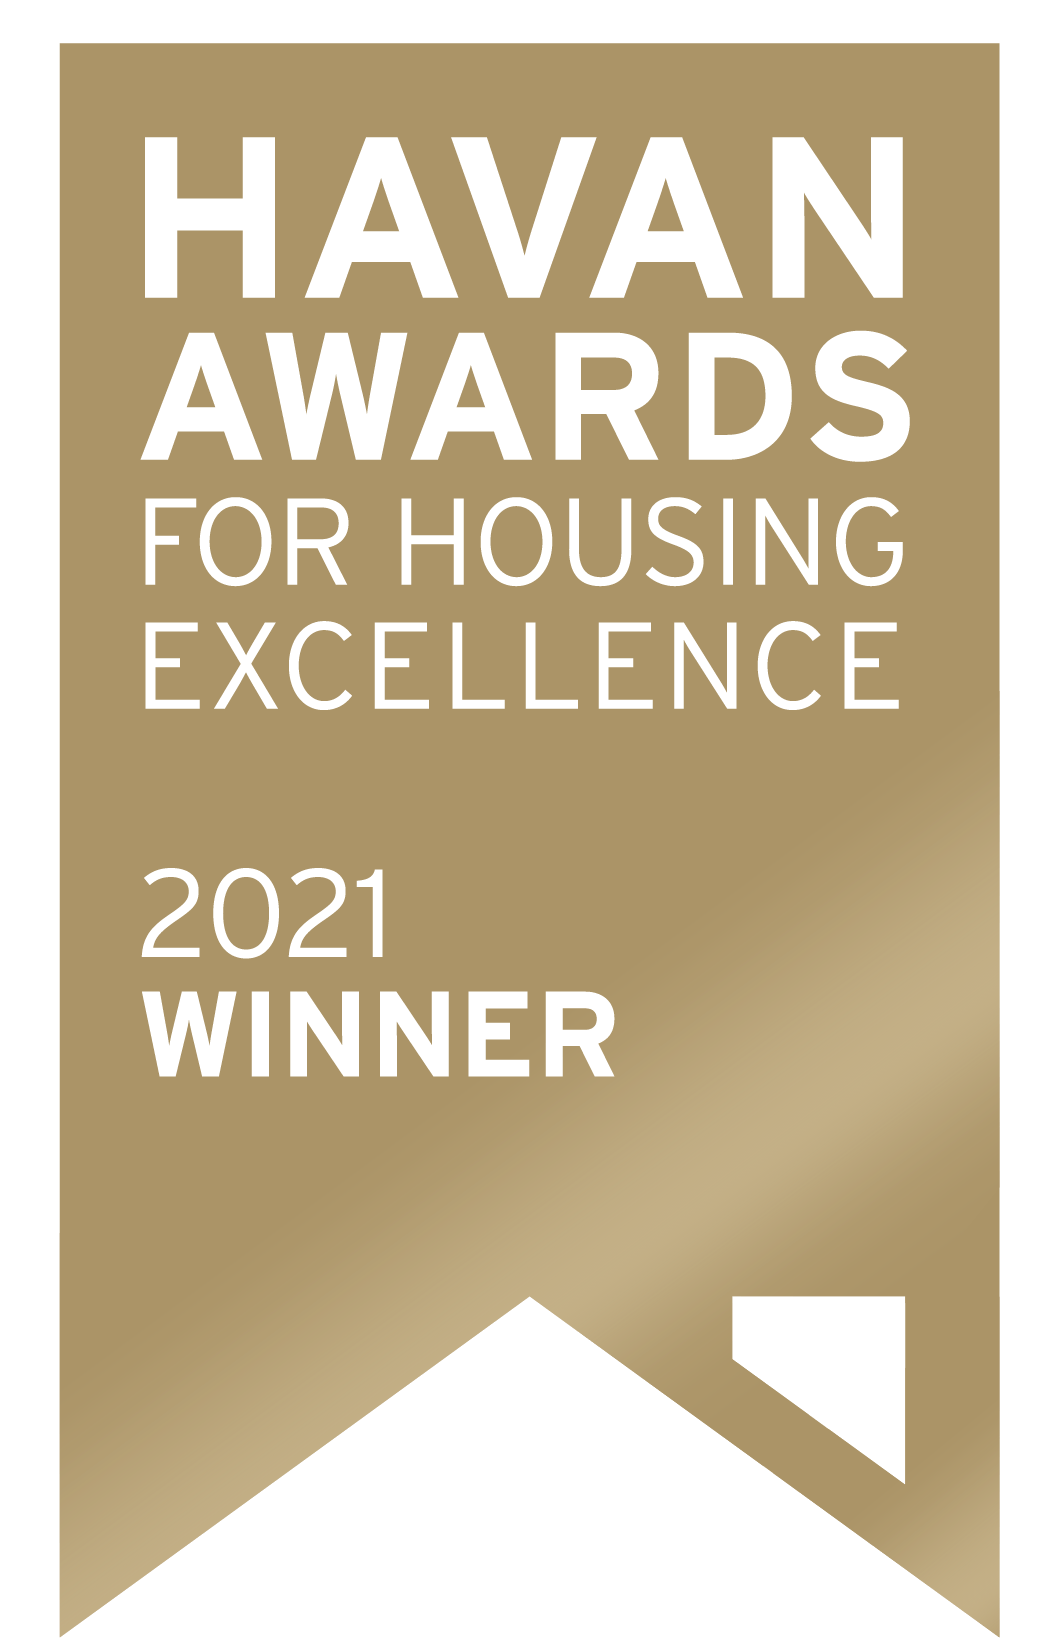 Havan Awards for Housing Excellence - 2021 Winner